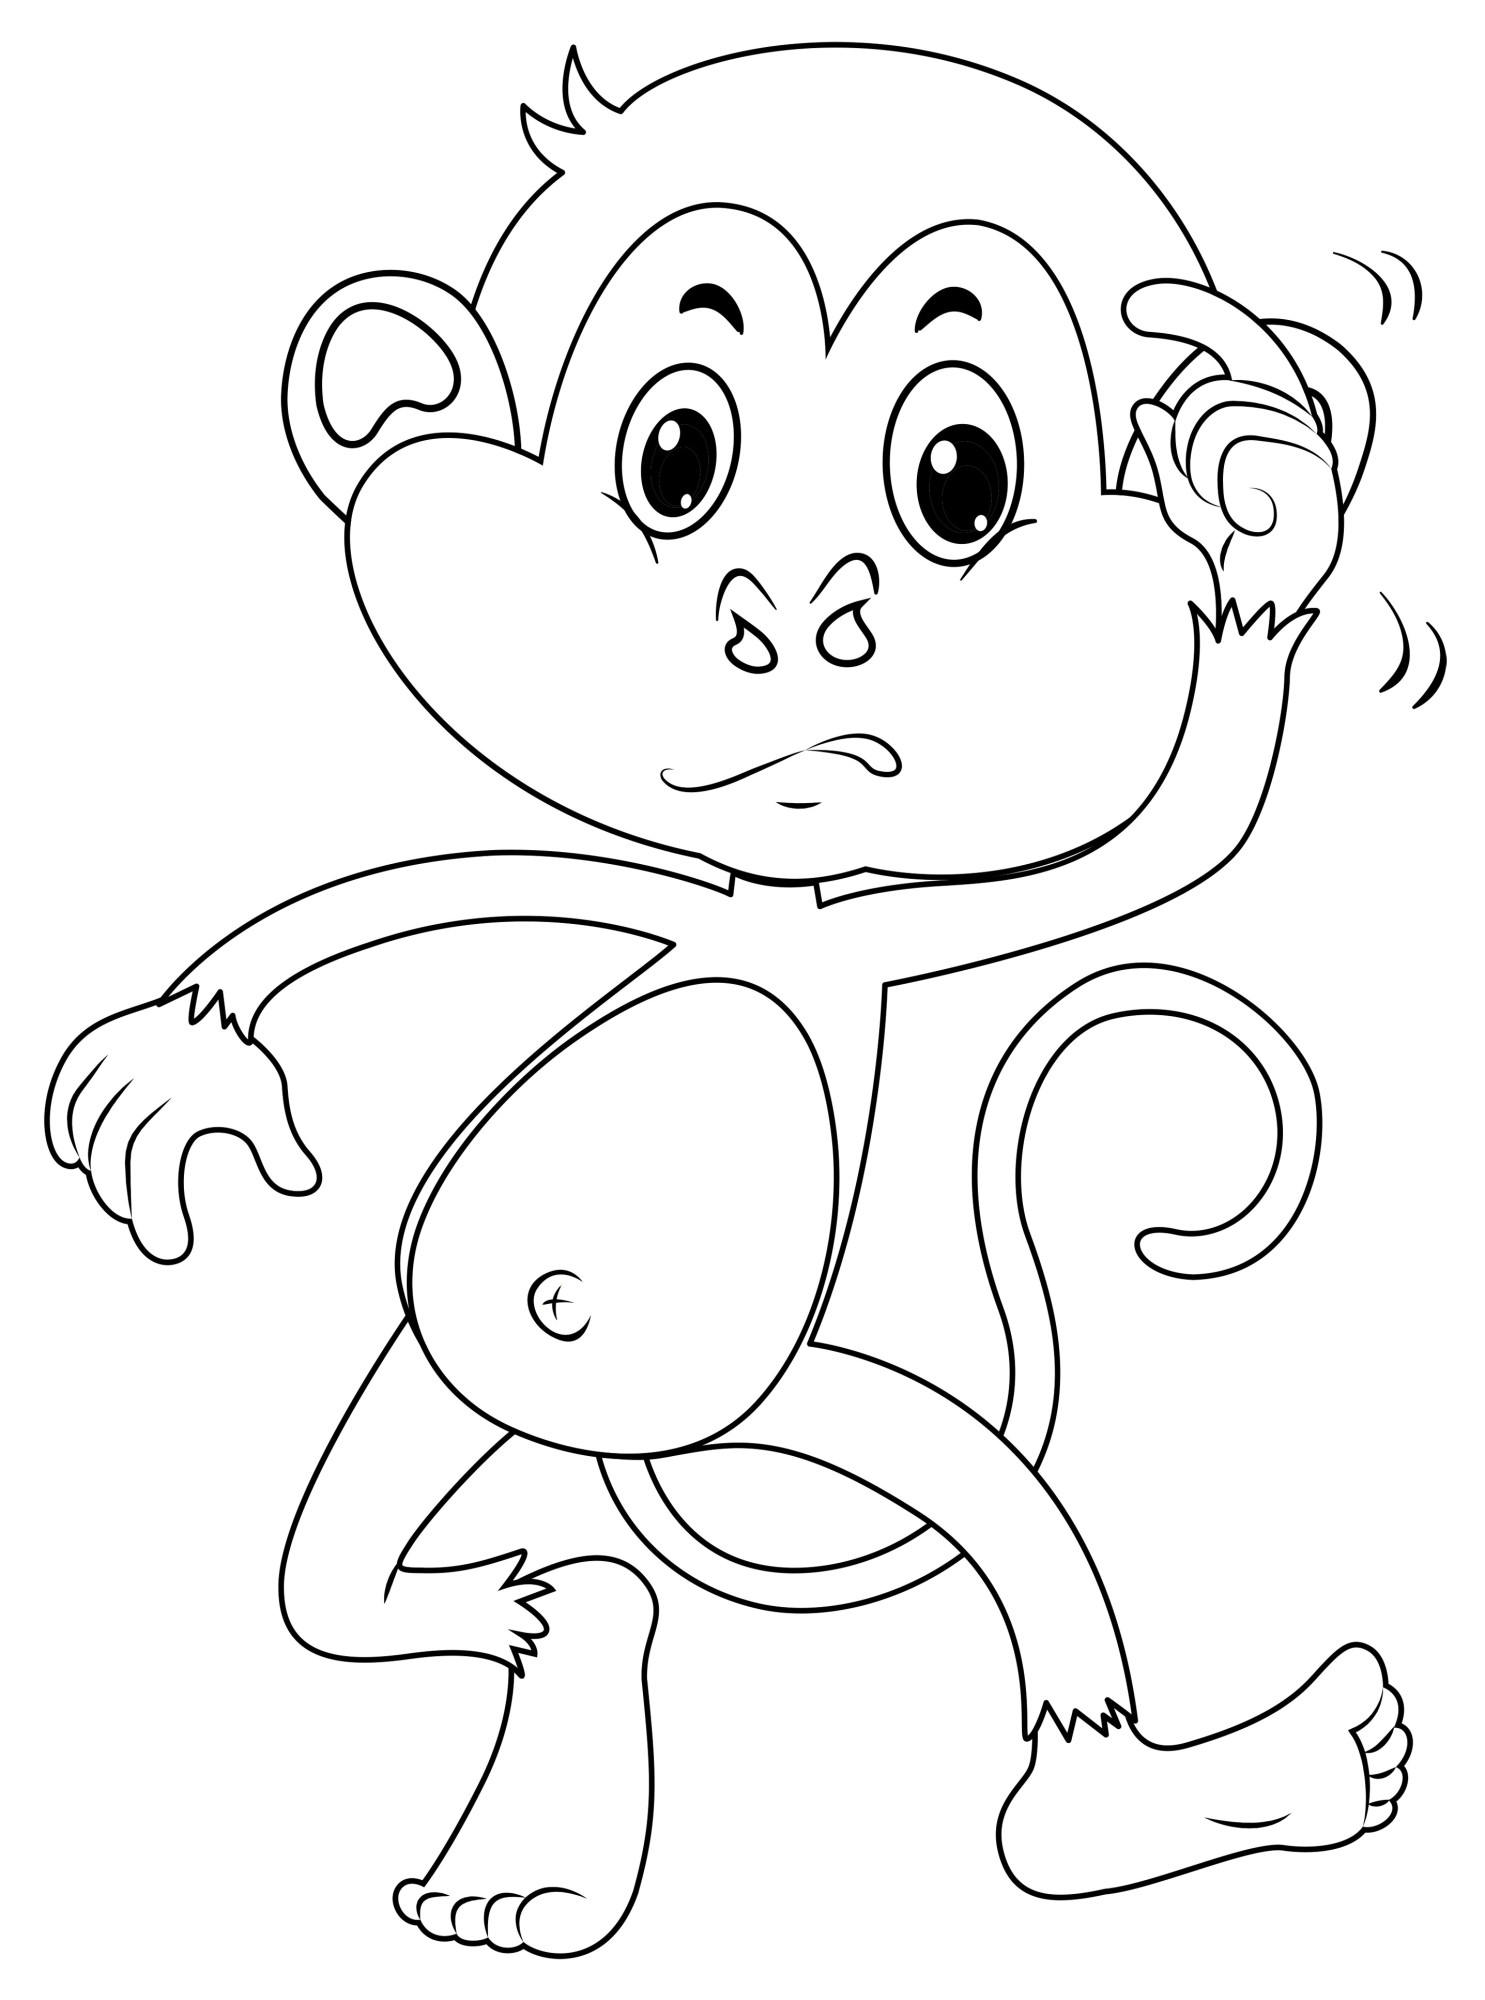 Раскраска для детей: маленькая обезьяна танцует